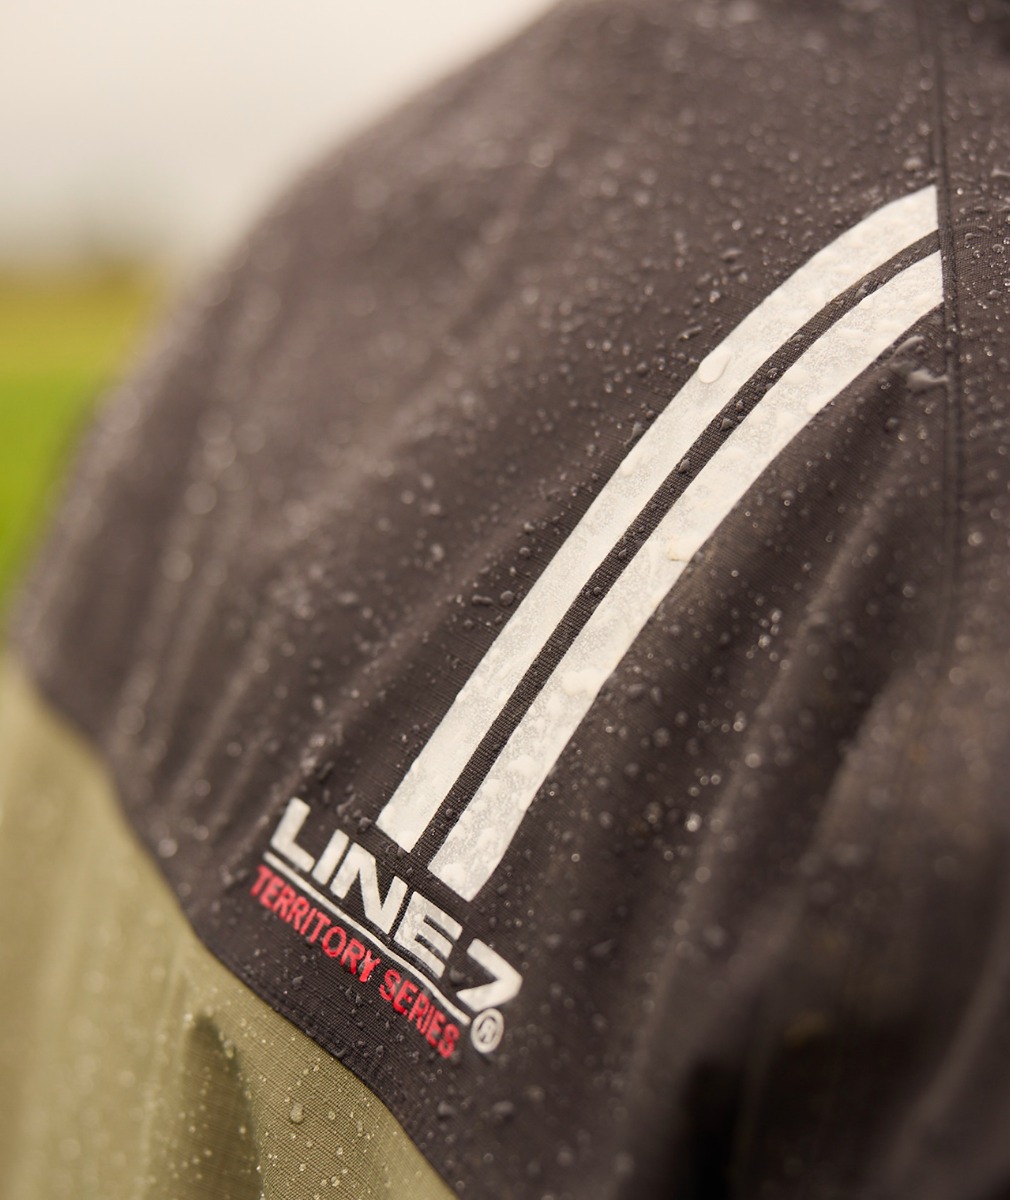 Line 7 Men's Territory Storm Pro20 Waterproof Jacket